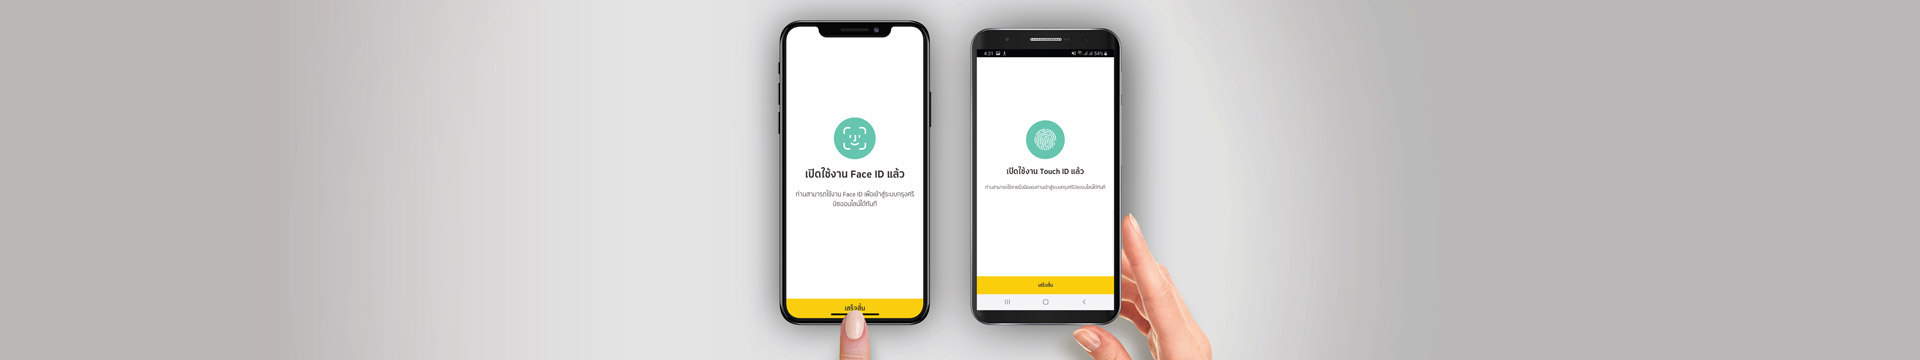 Krungsri Biz Online App Face ID/Touch ID